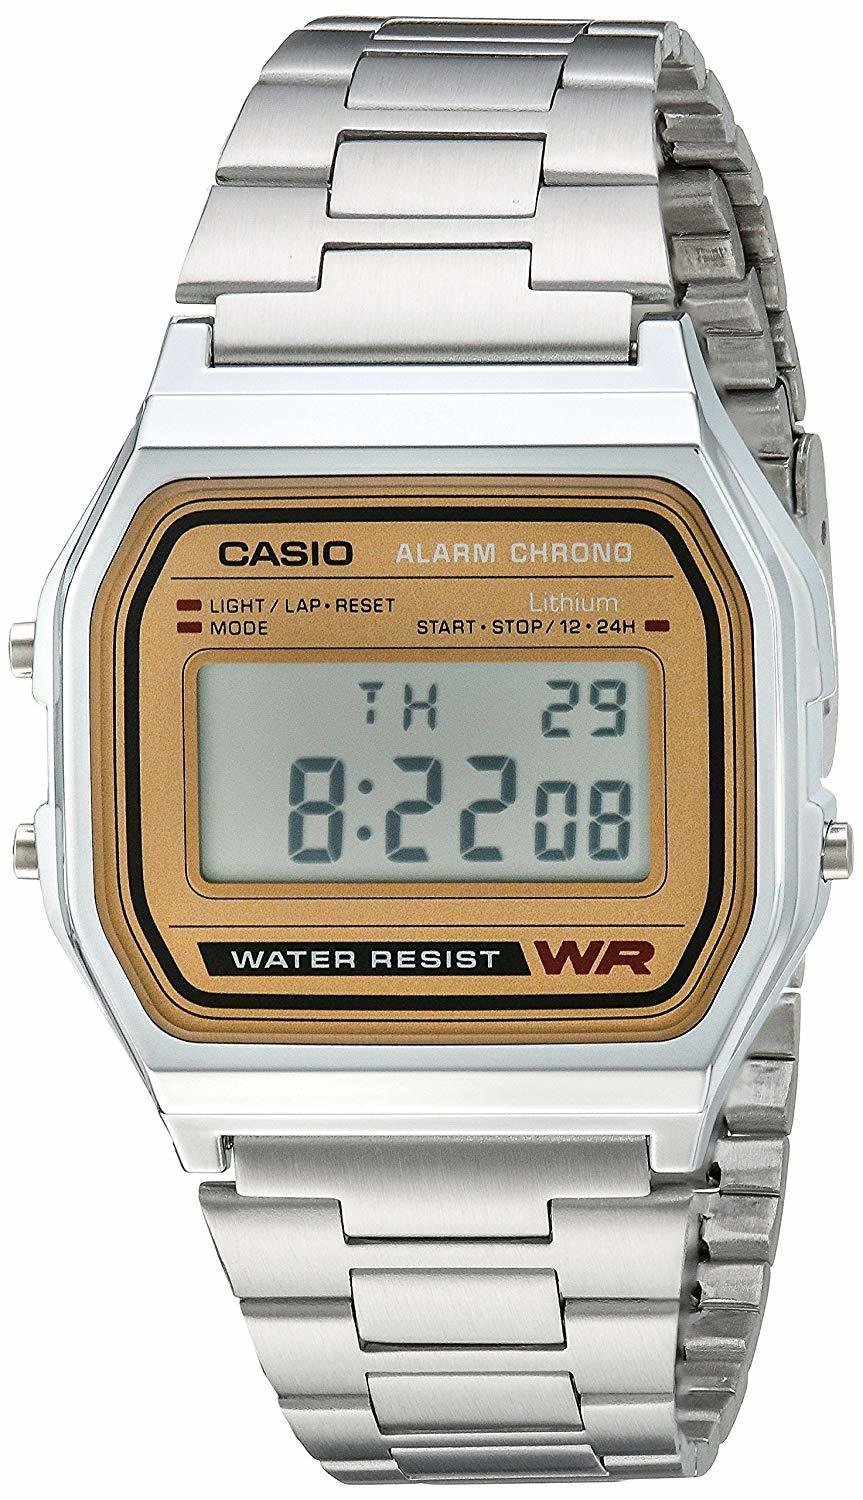 Reloj CASIO digital pulsera informal A158WEA-9CF Cuadrante dorado alarma luz led